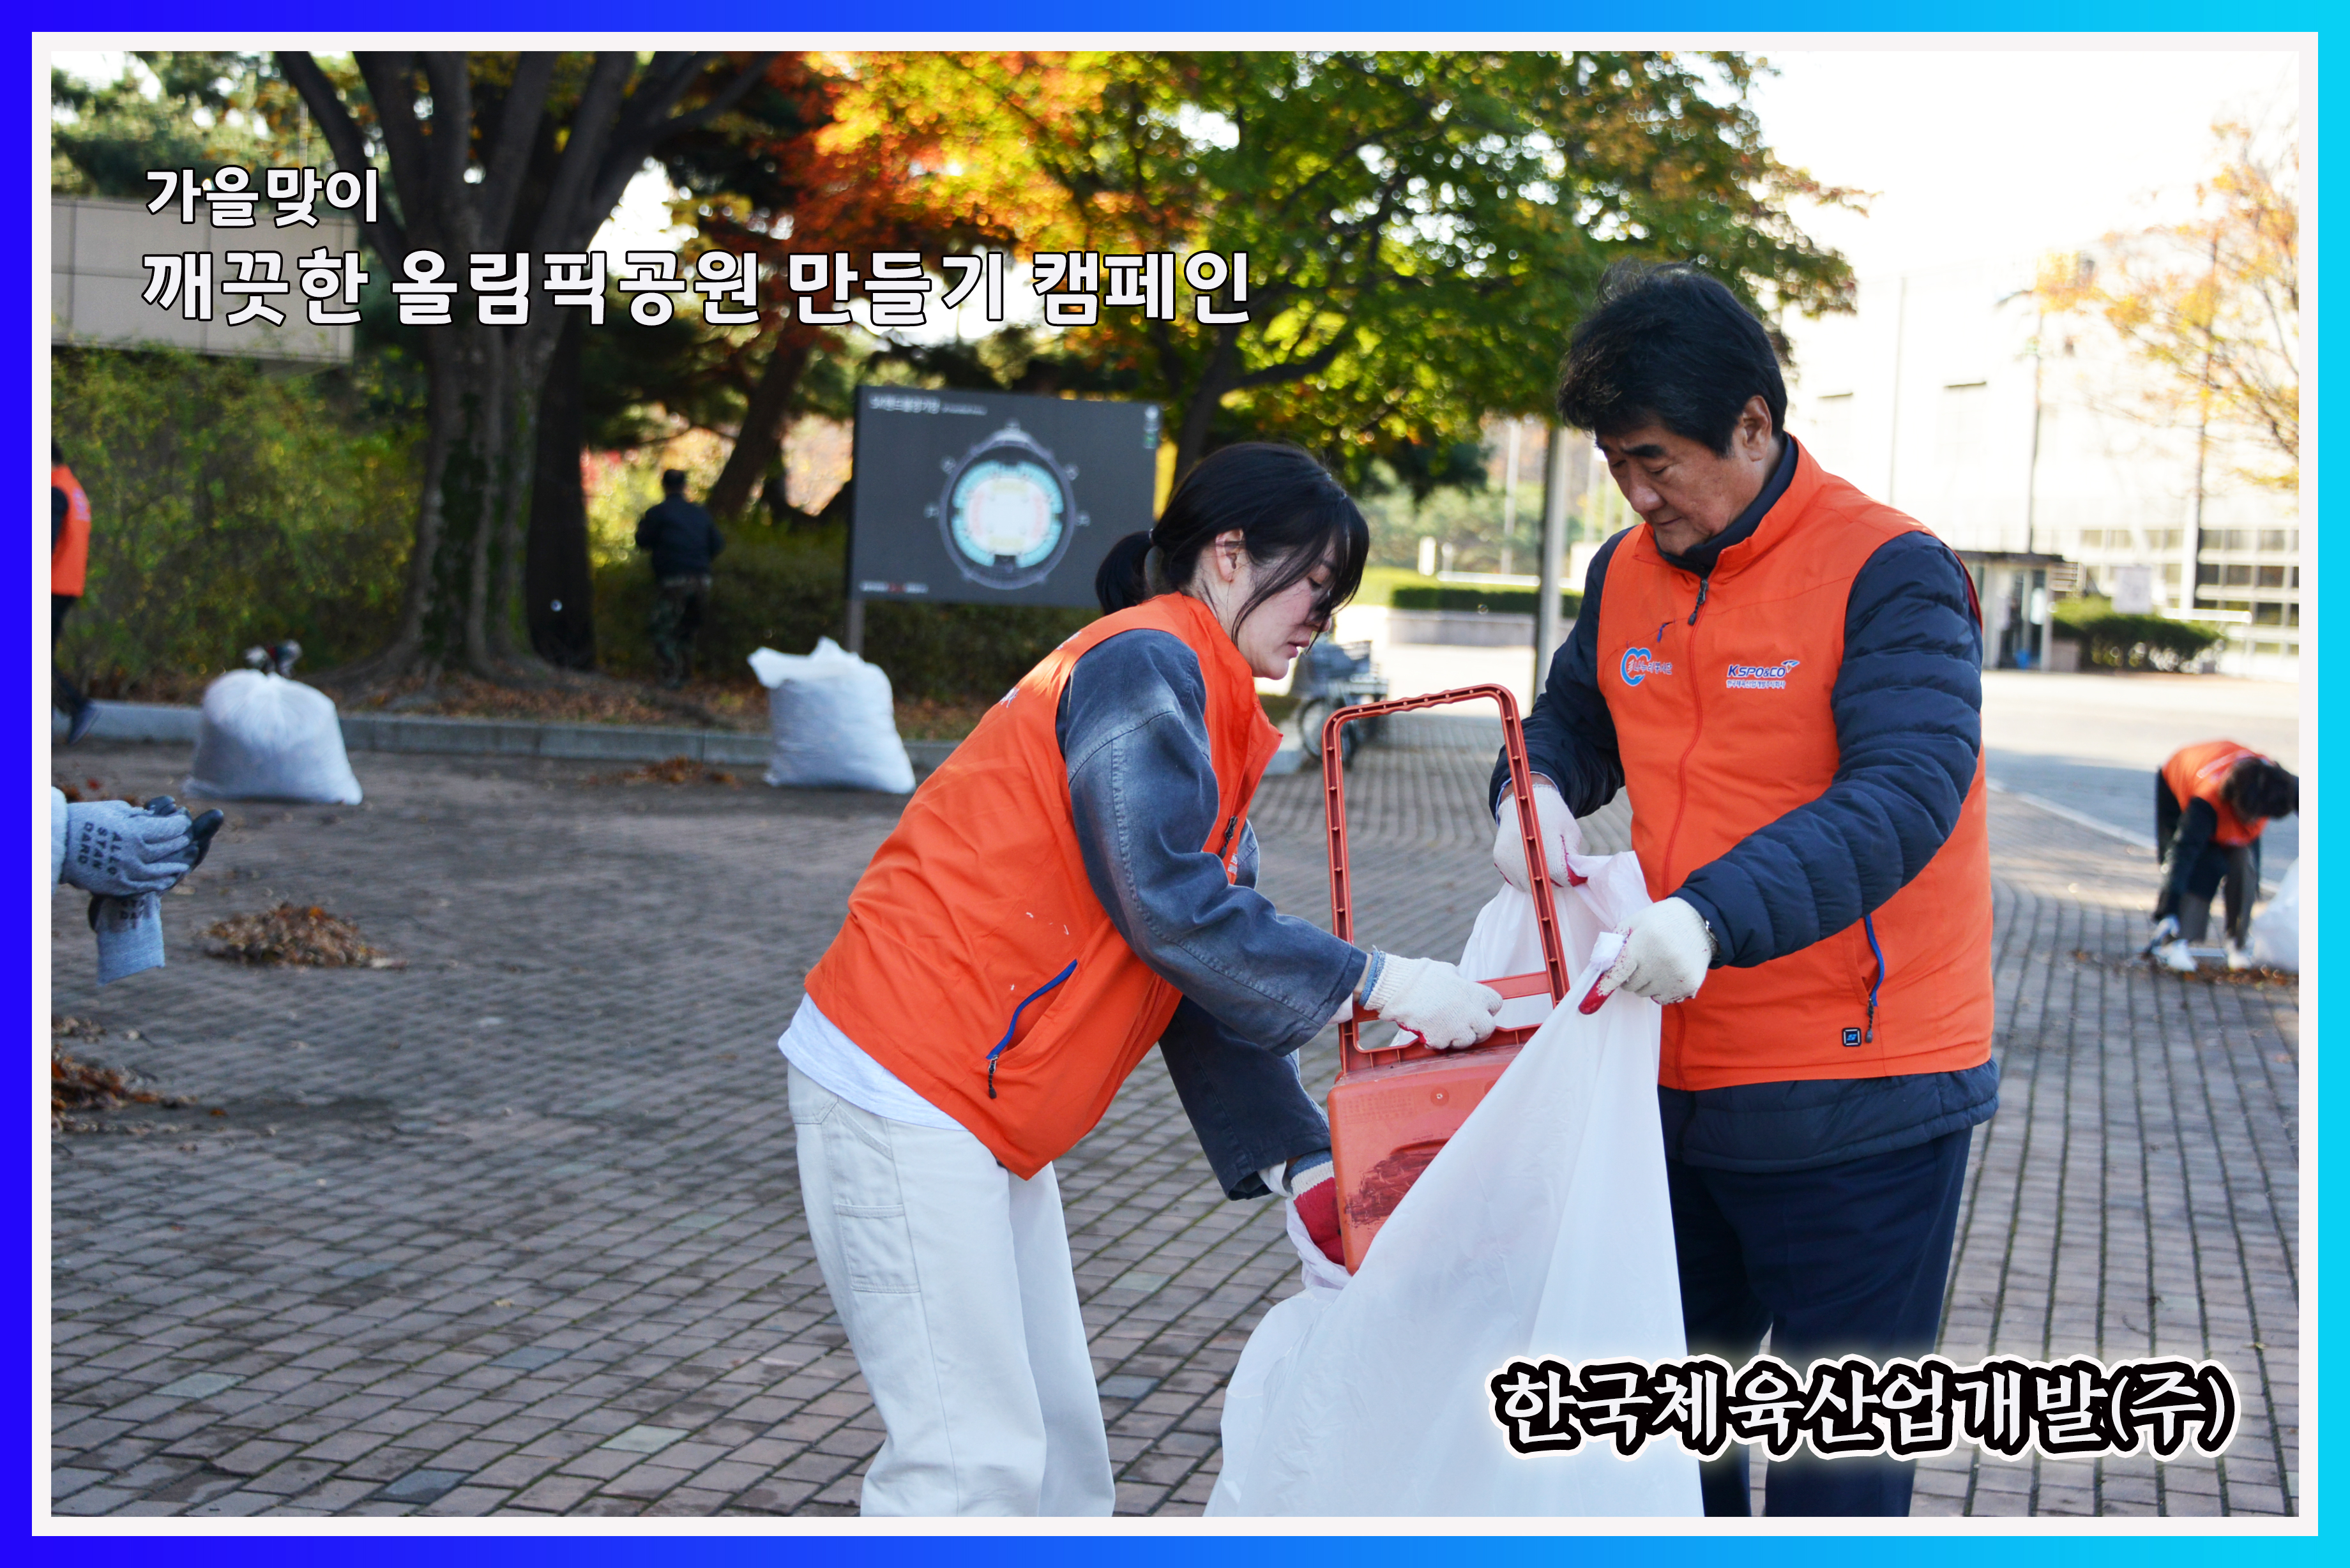 가을맞이 깨끗한 올림픽공원 만들기 캠페인 시행 사진4